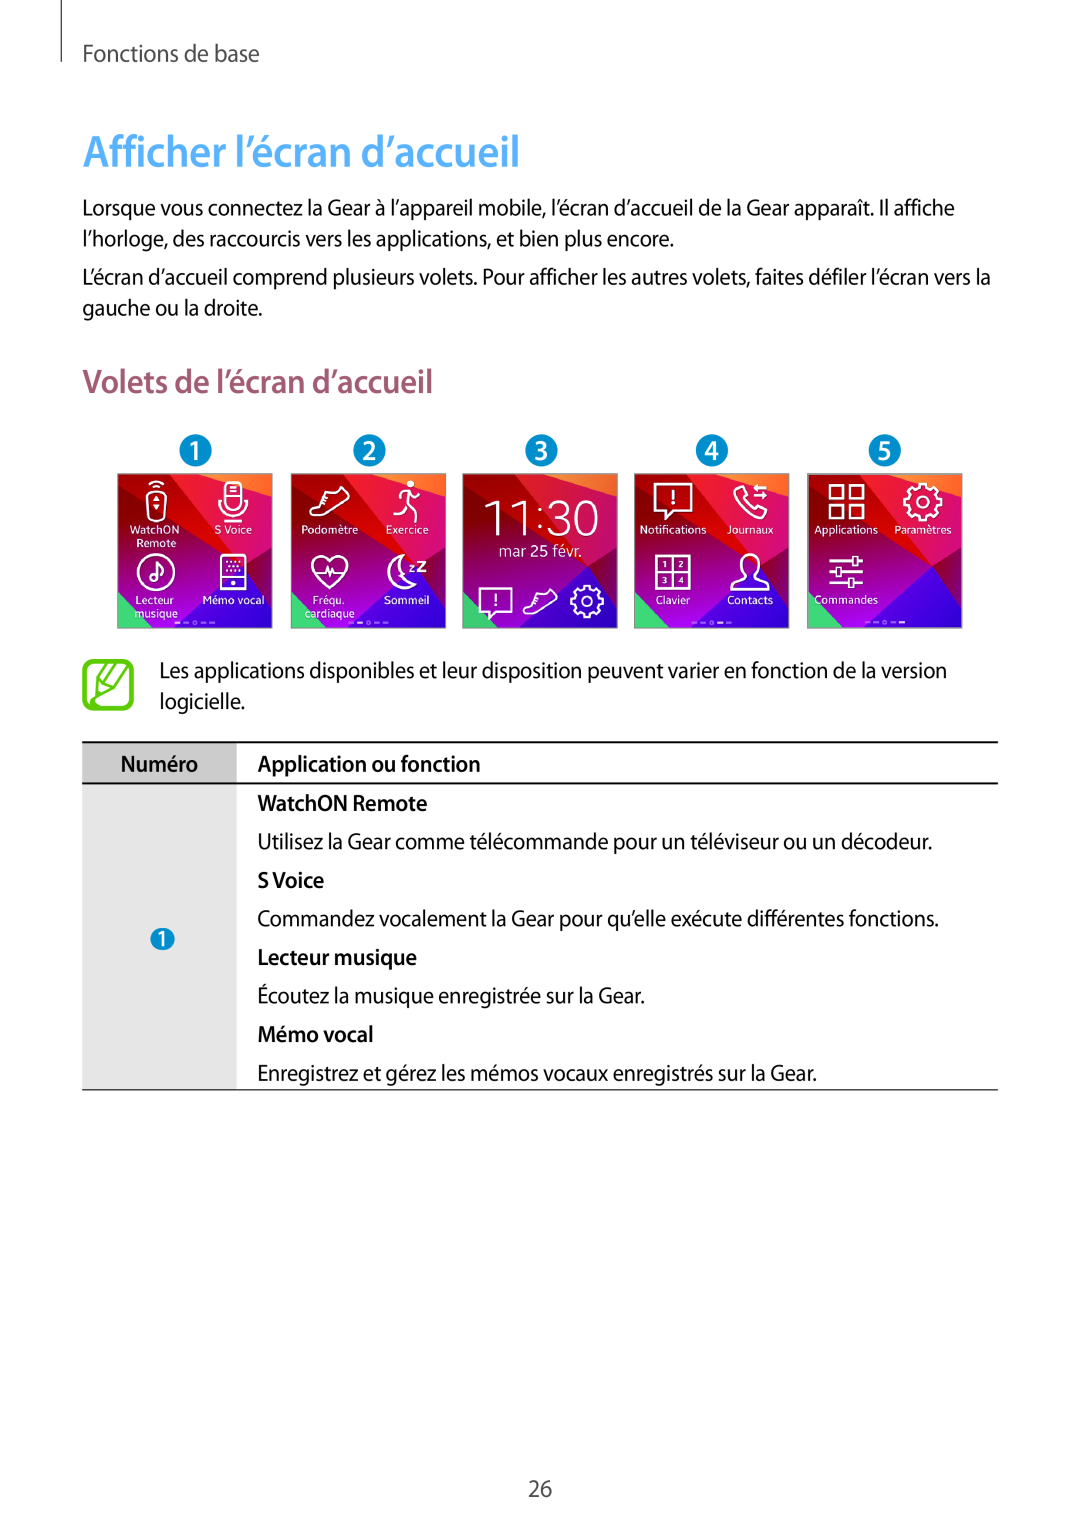 Samsung SM-R3810ZKAXEF, SM-R3810ZAAXEF manual Afficher l’écran d’accueil, Volets de l’écran d’accueil, Fonctions de base 